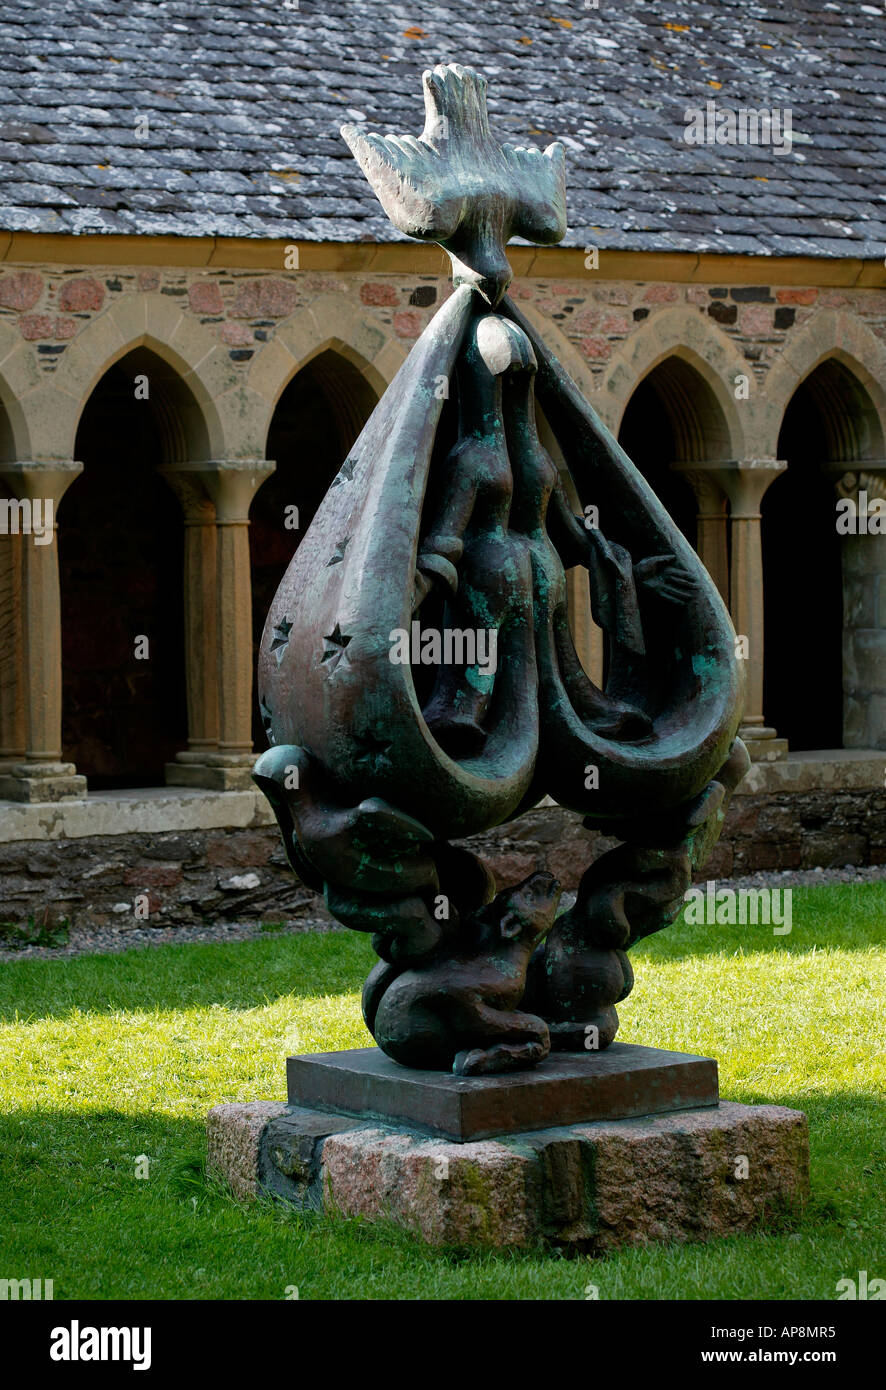 Escultura en bronce en los jardines de la abadía, la isla de Iona, Escocia, Reino Unido Europa Foto de stock